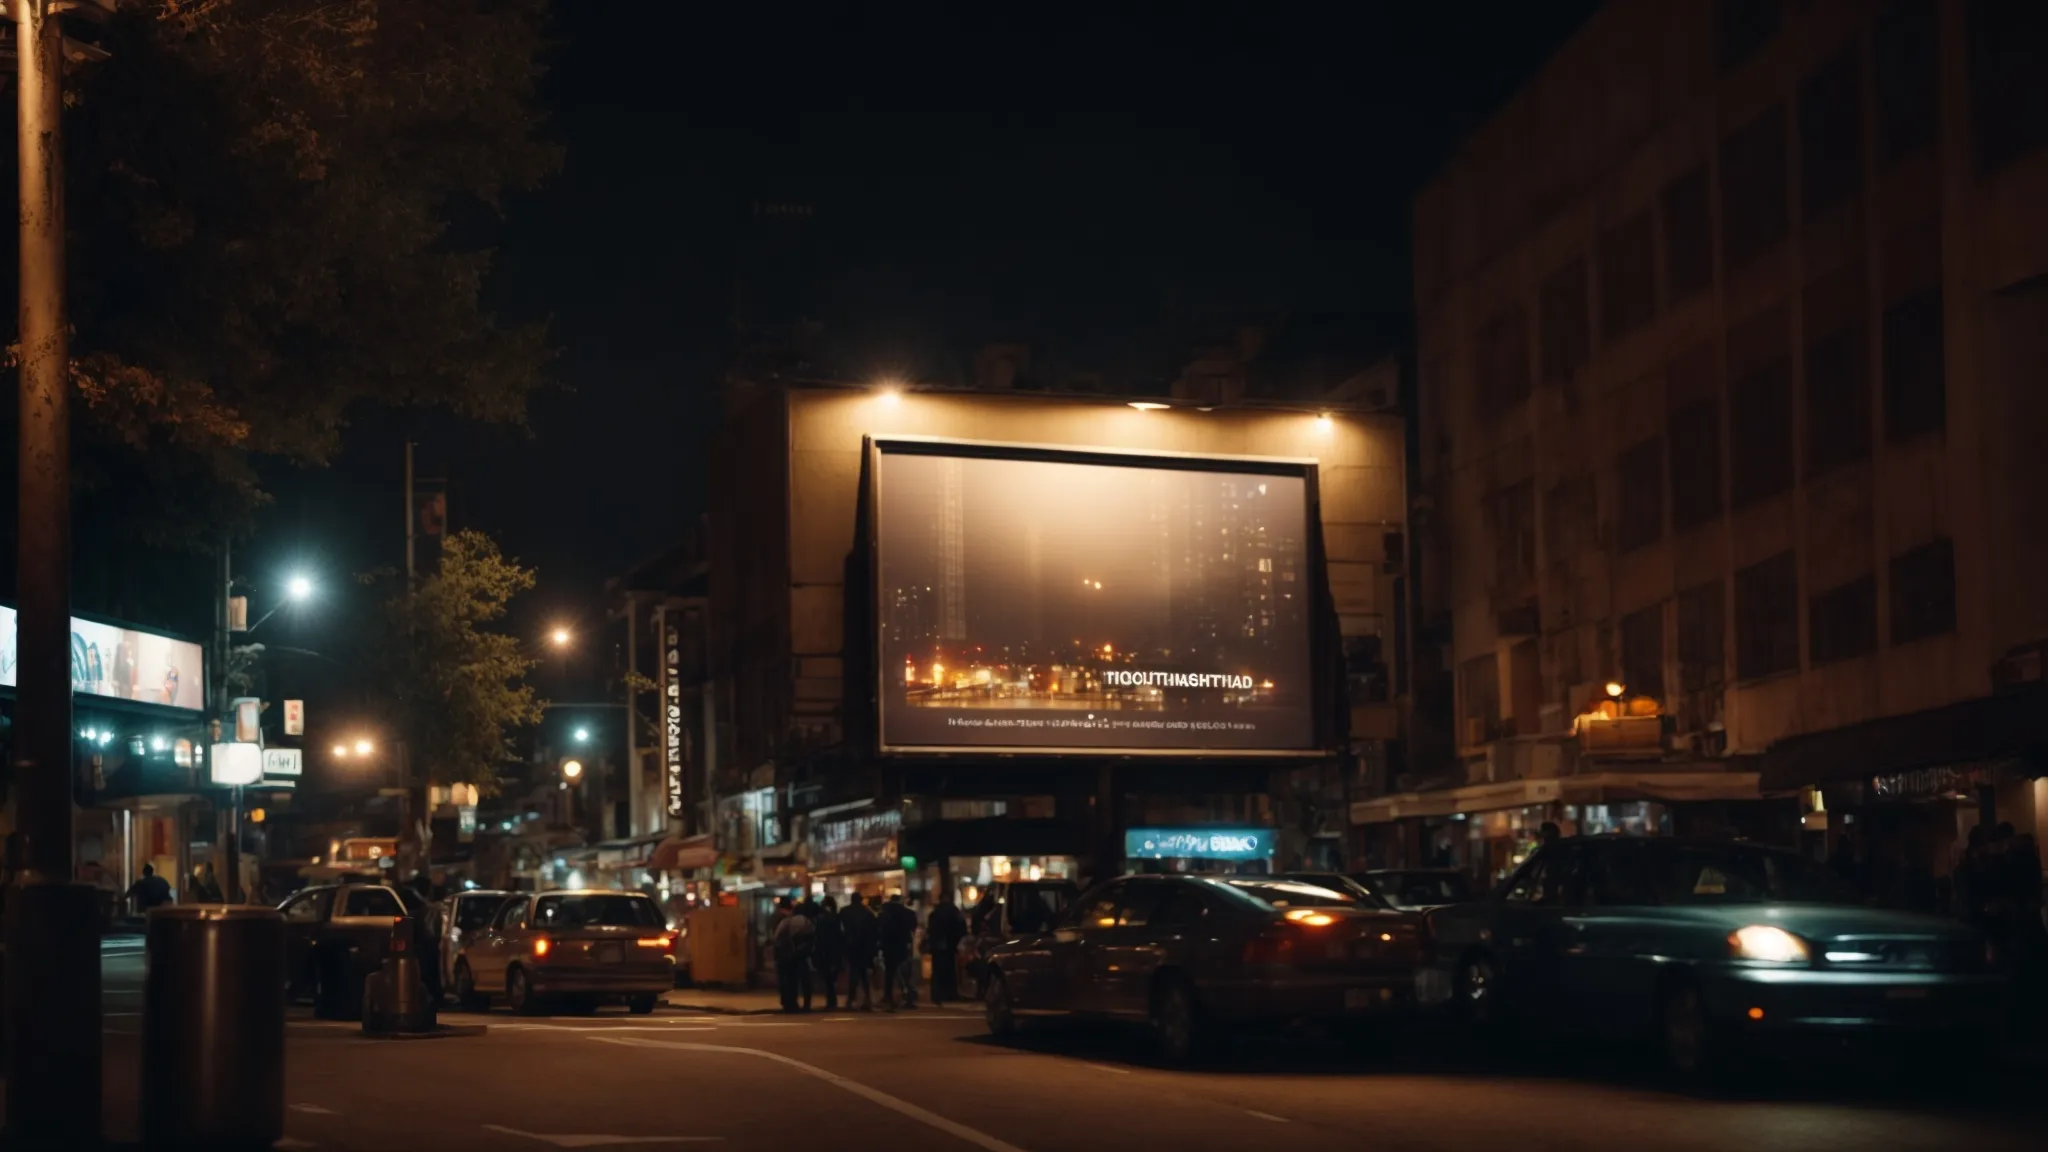 a spotlight illuminating a billboard at night on a bustling city street.